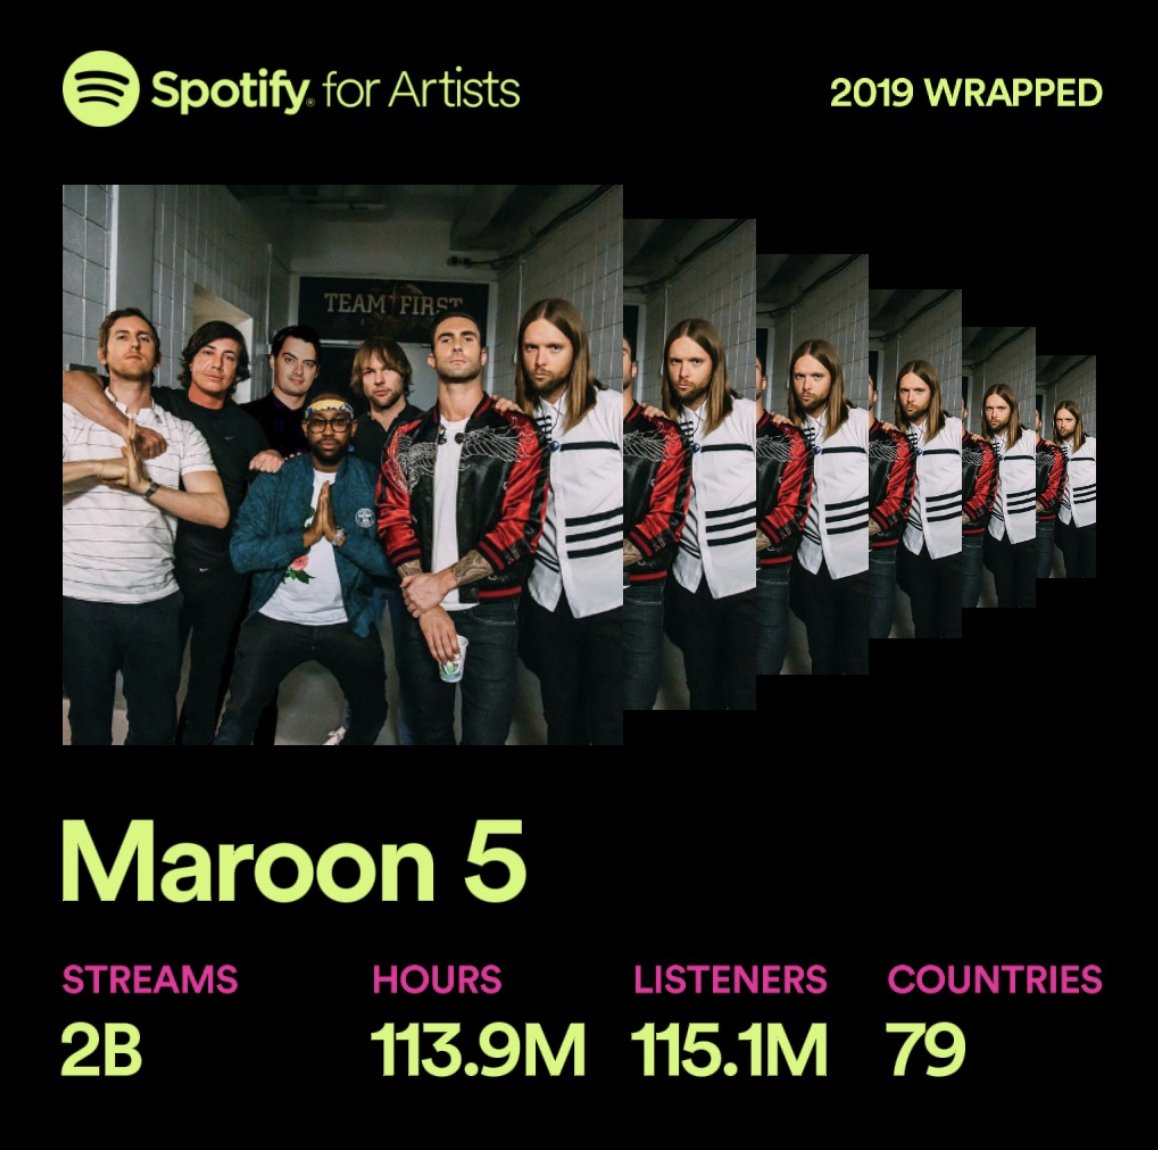 ¡Una buena noticia! La banda Maroon 5 saldrá de gira en 2020